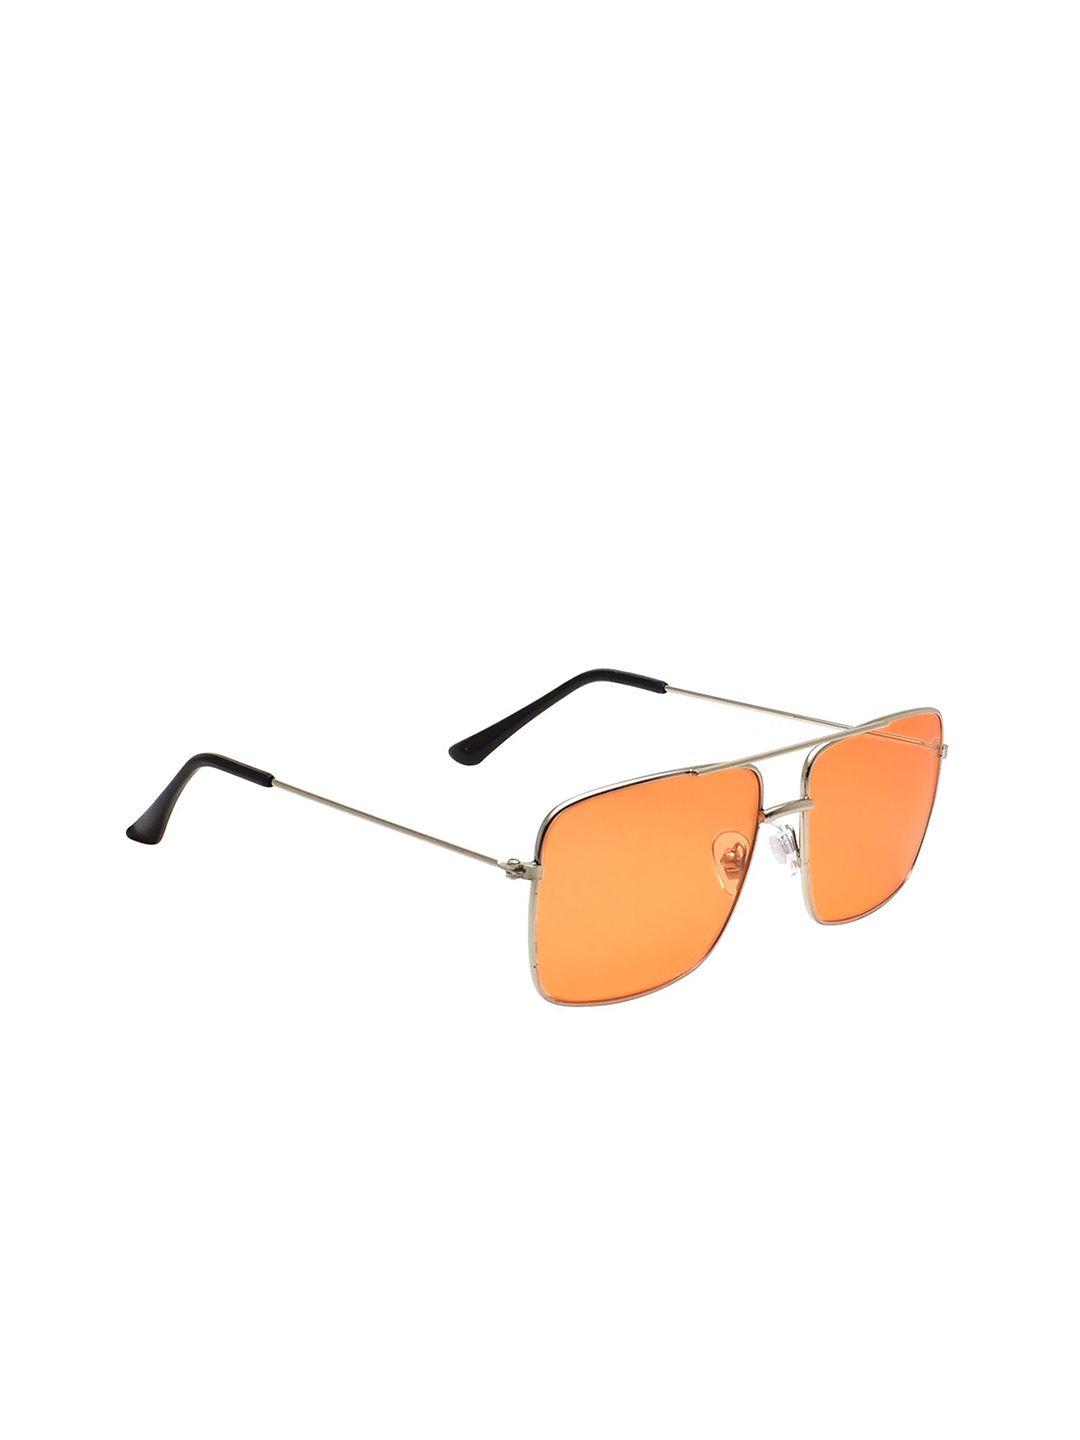 peter jones eyewear women orange lens & gold-toned square sunglasses st001og